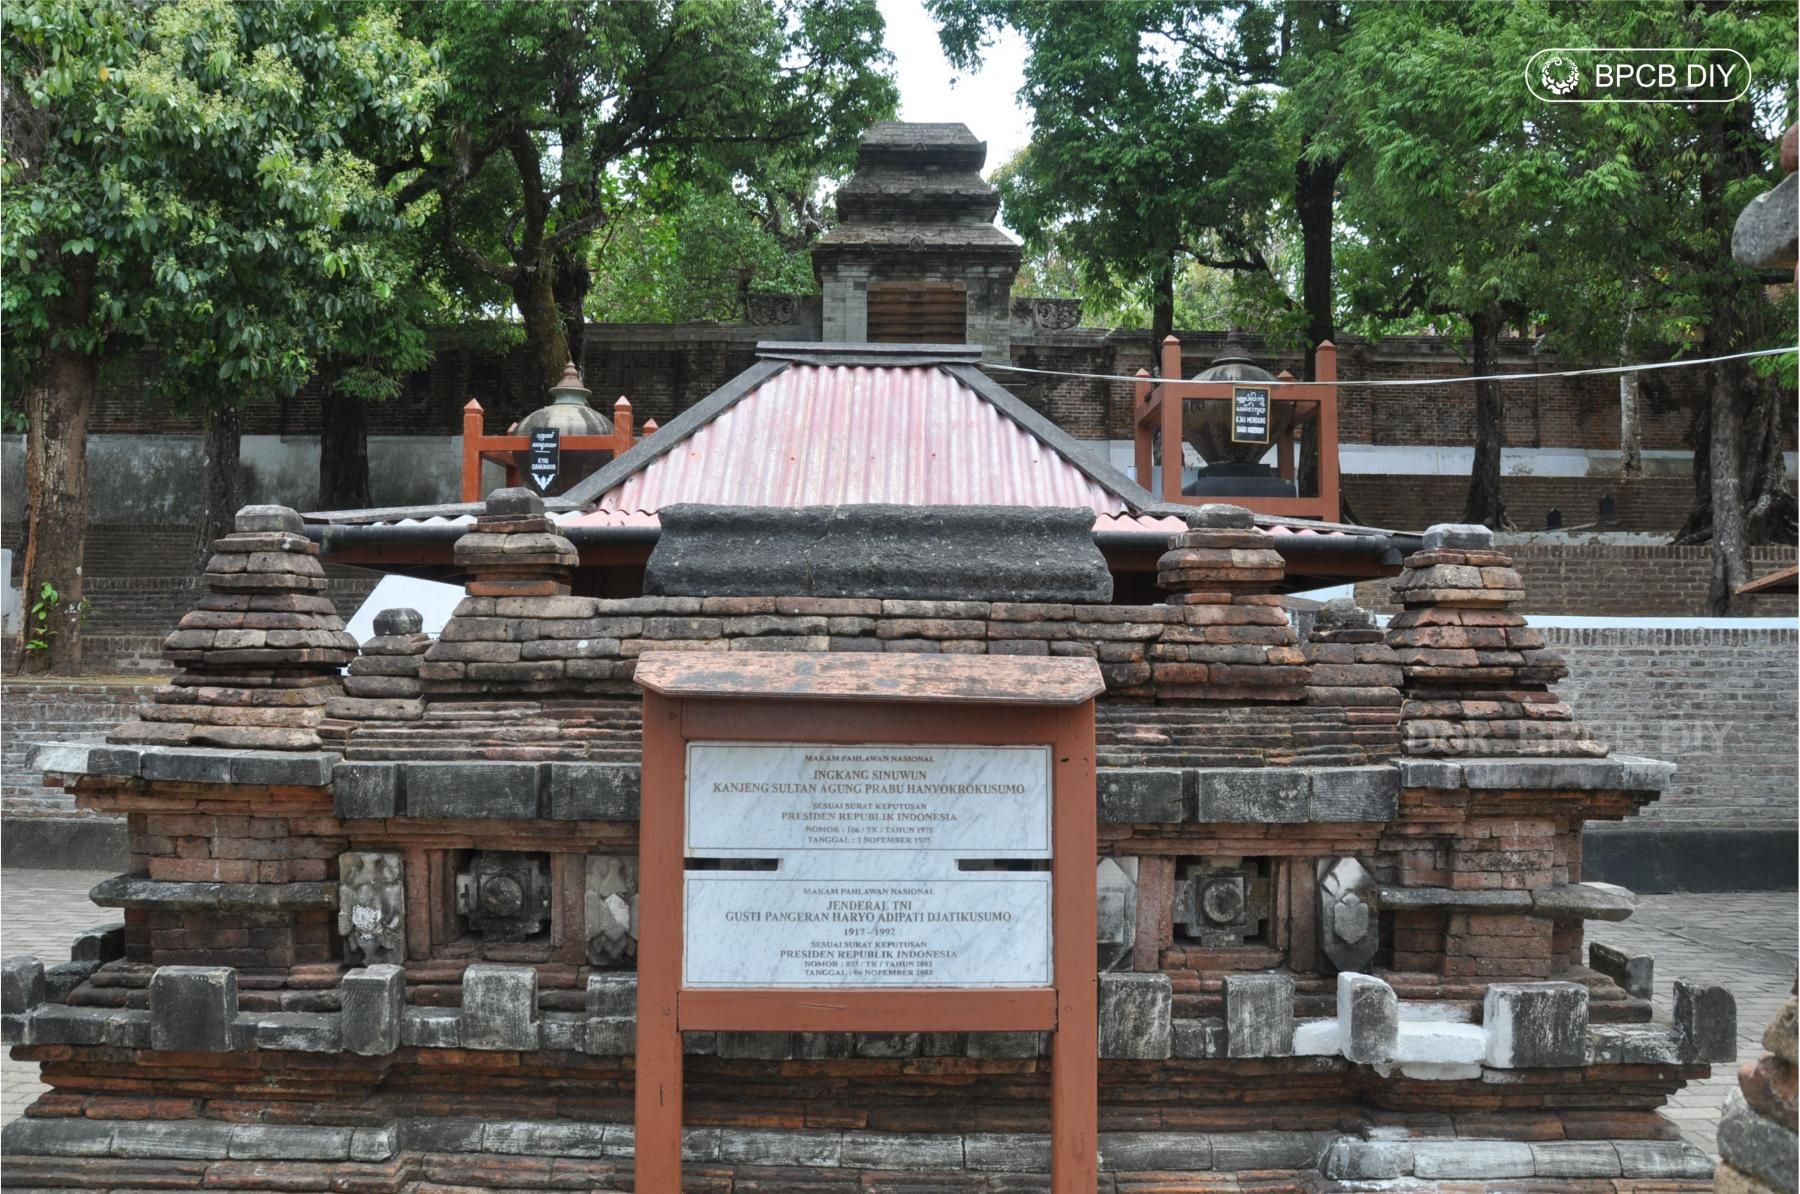 Makam Imogiri Sultang Hamengkubuwono IX